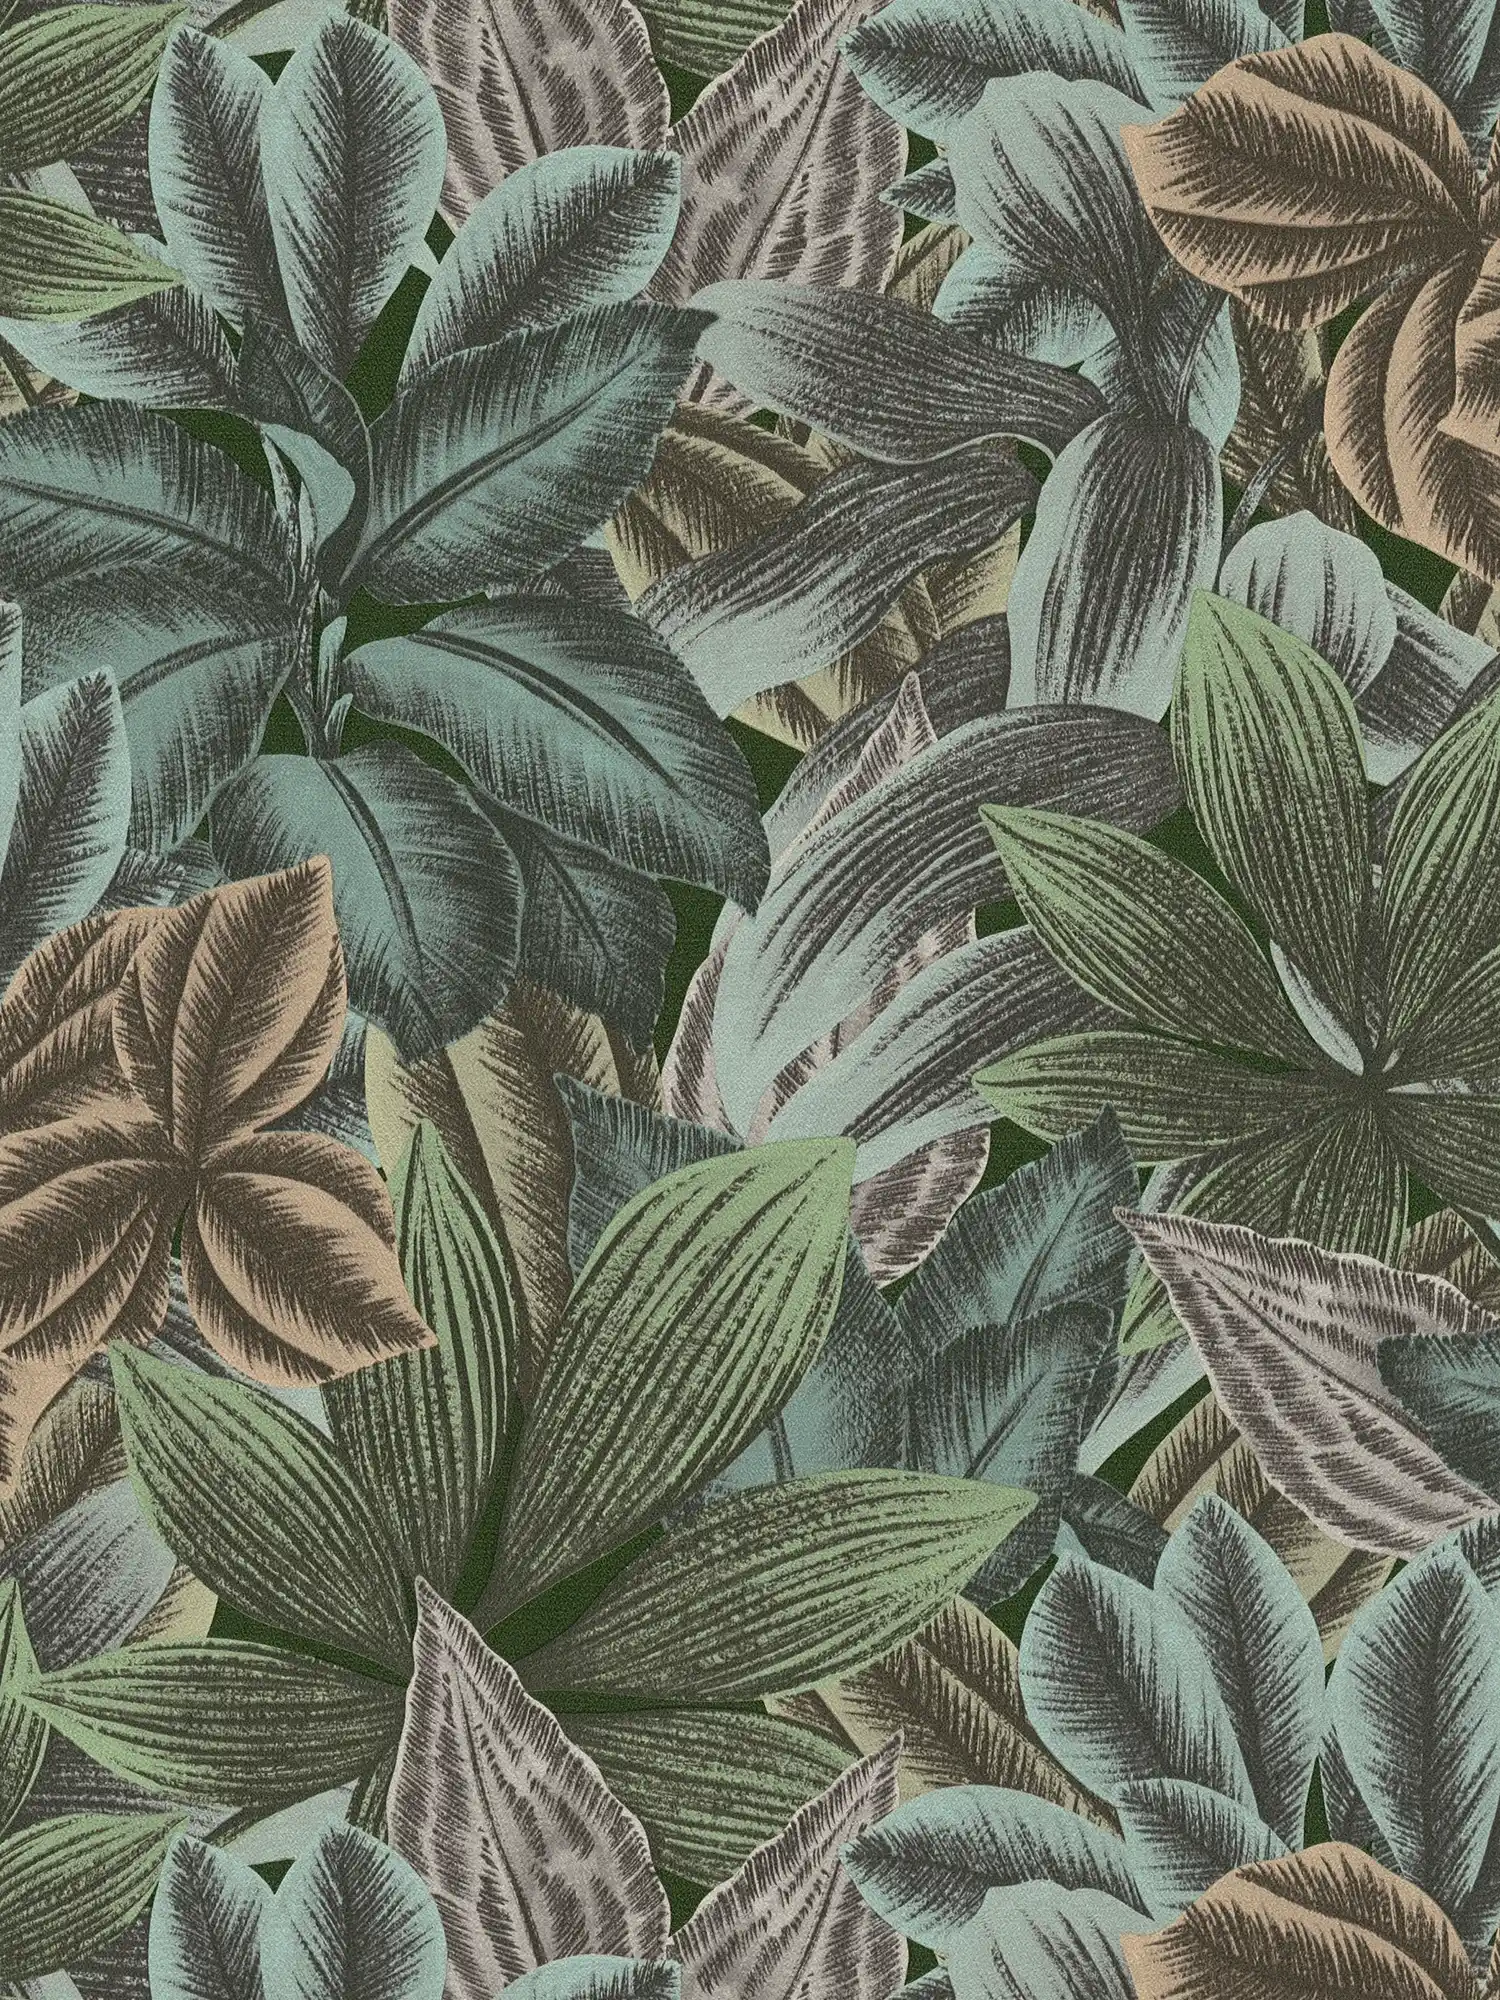 Blattmuster Tapete mit tropischen Look – Grün, Blau, Grau
